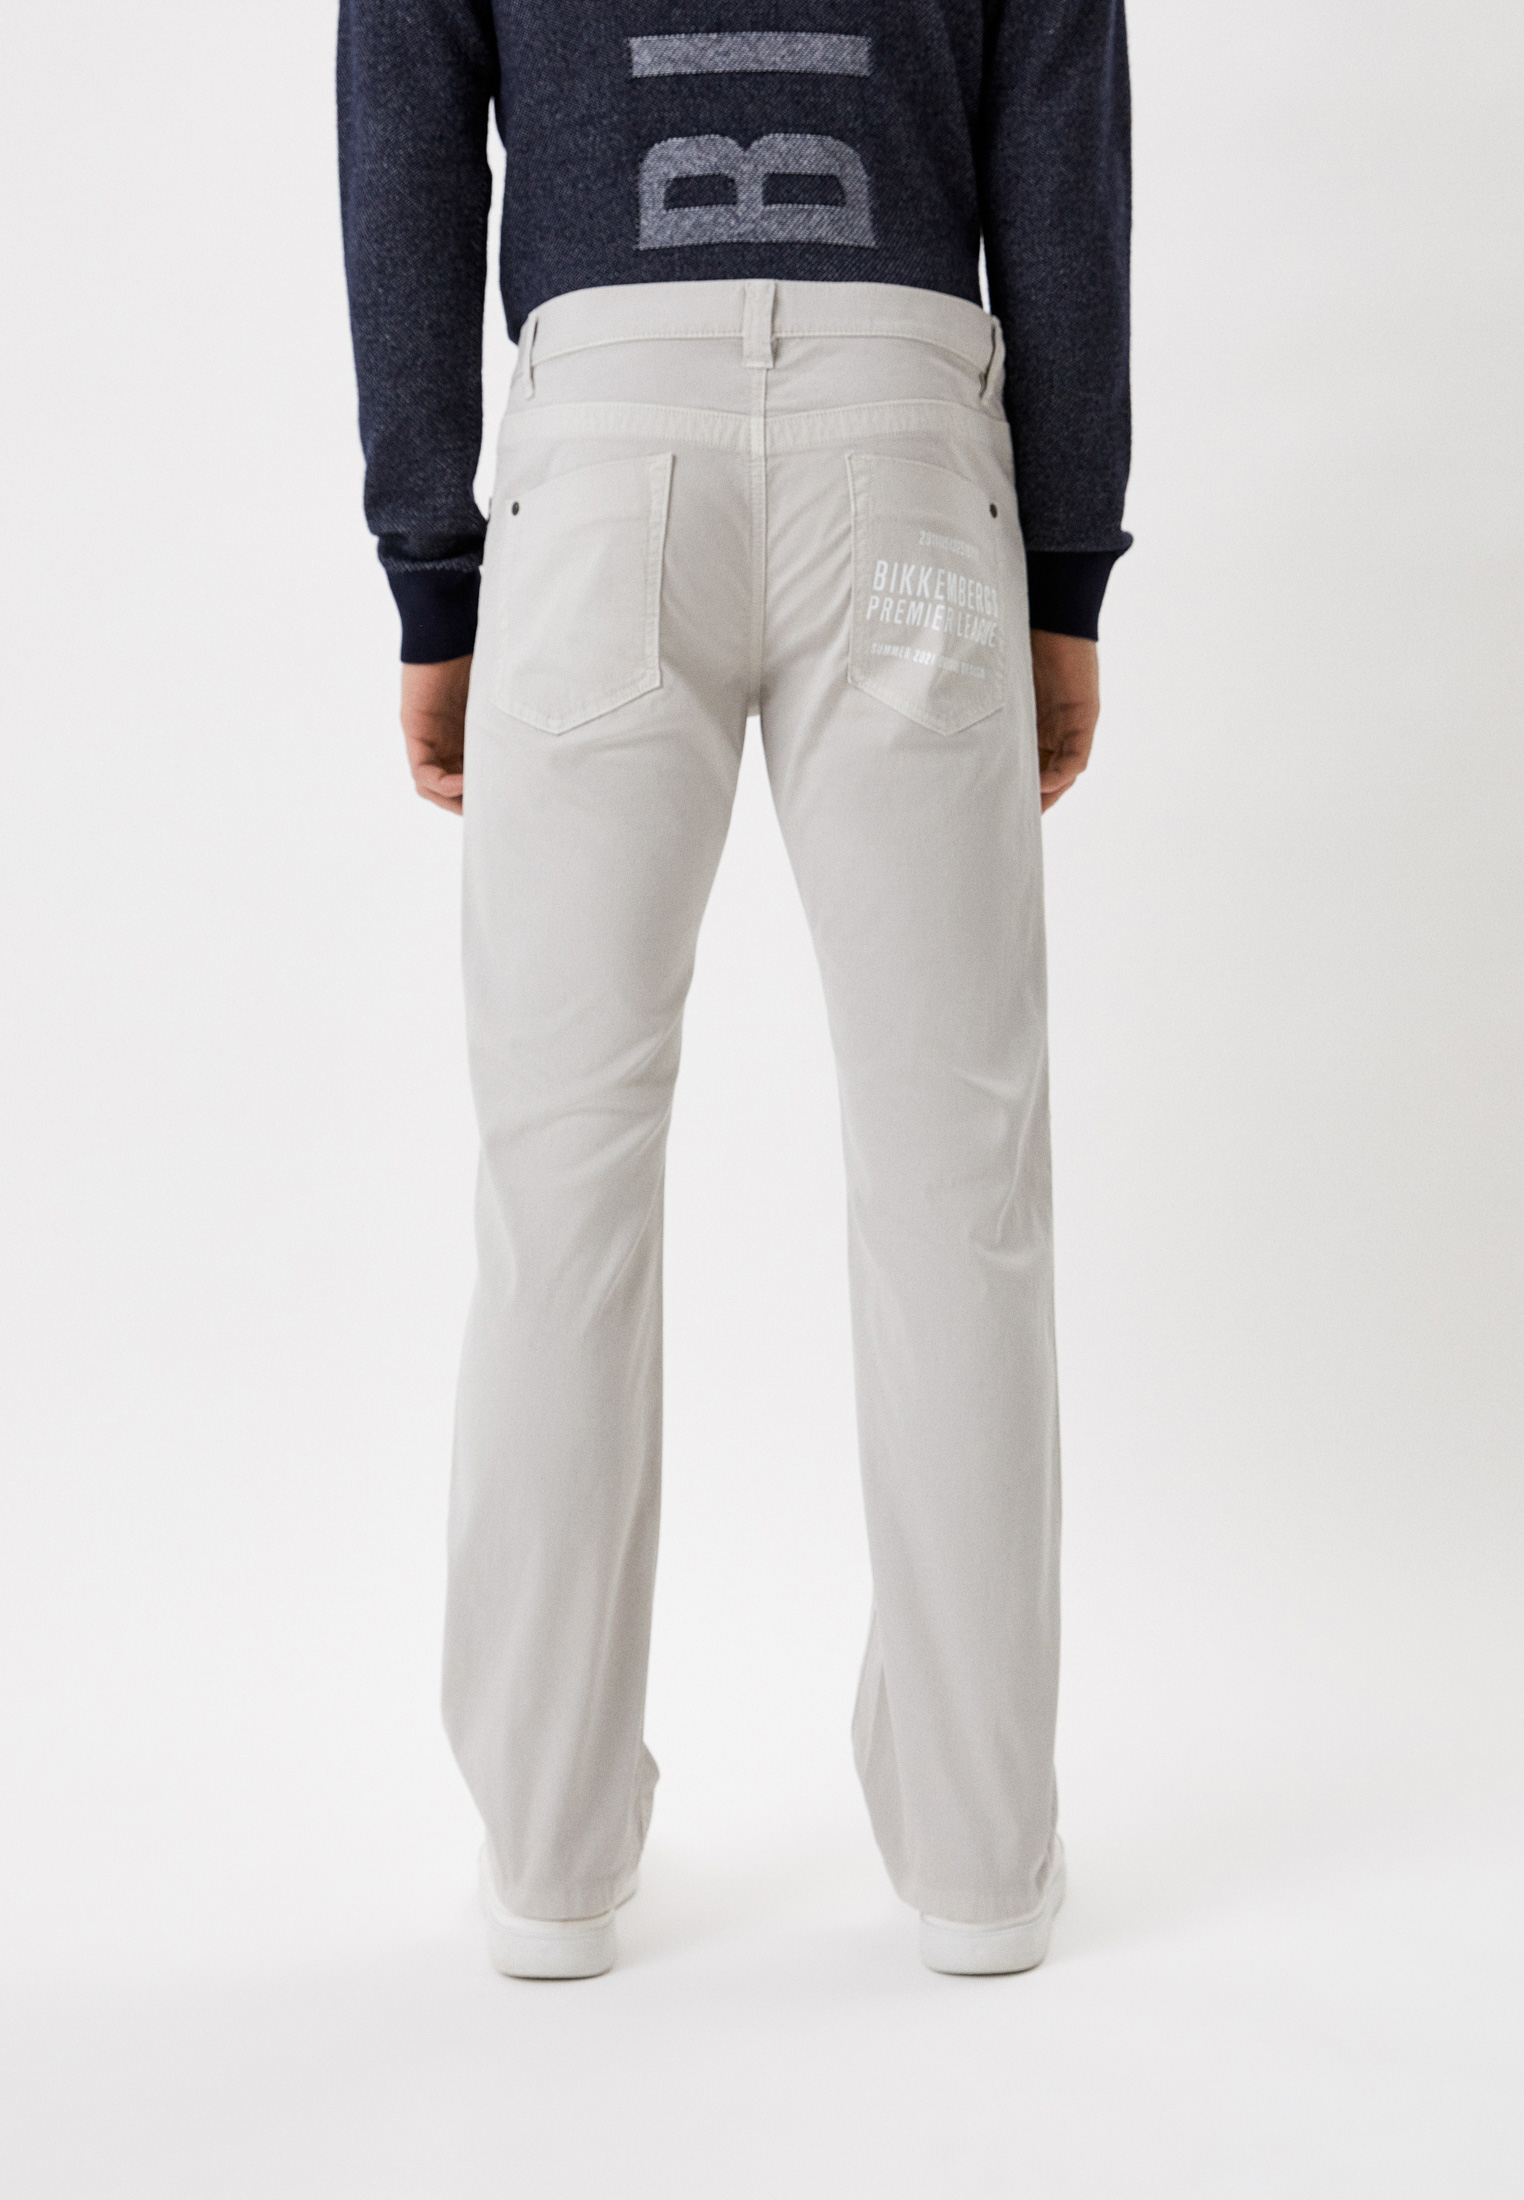 Мужские повседневные брюки Bikkembergs (Биккембергс) CQ11002S3514: изображение 3